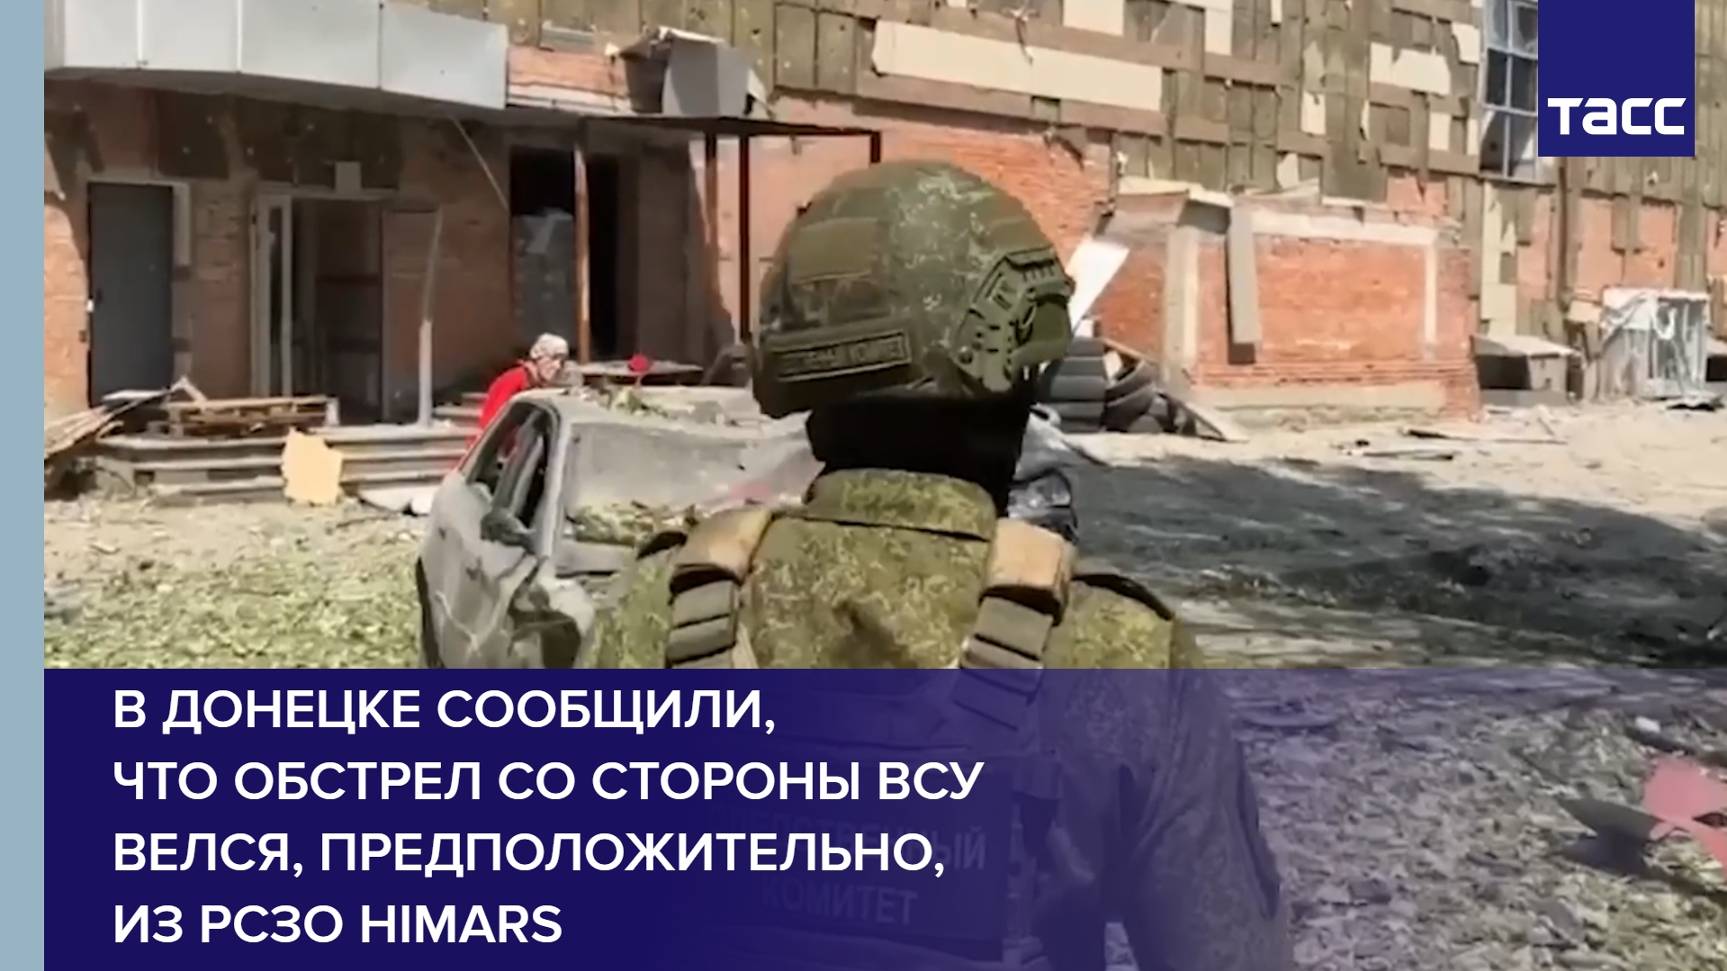 В Донецке сообщили, что обстрел со стороны ВСУ велся, предположительно, из РСЗО HIMARS